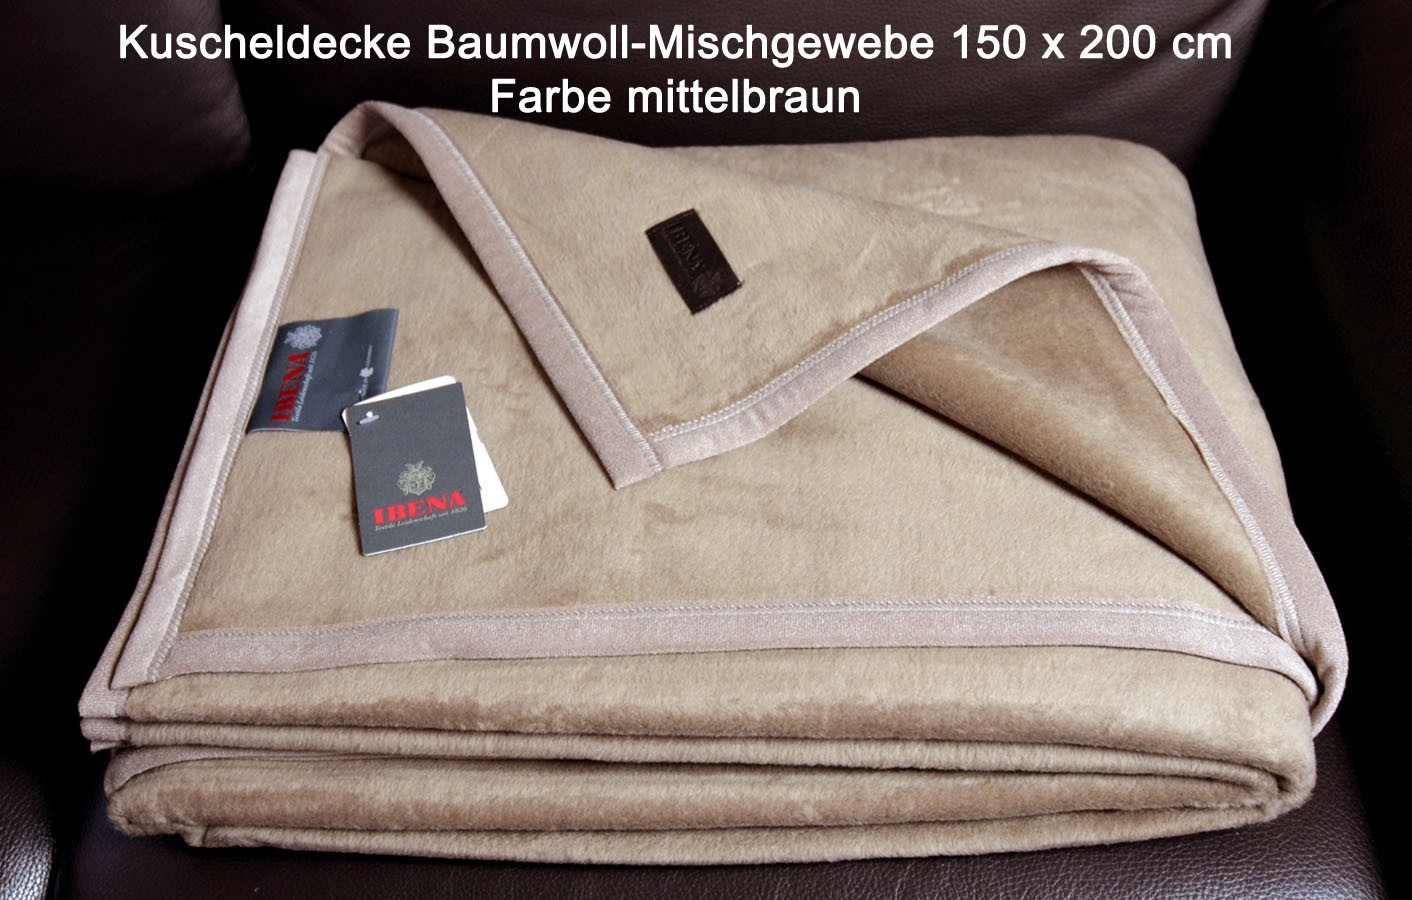 Kuscheldecke Berlin 150 x 200 cm mittelbraun Baumwollmischgewebe